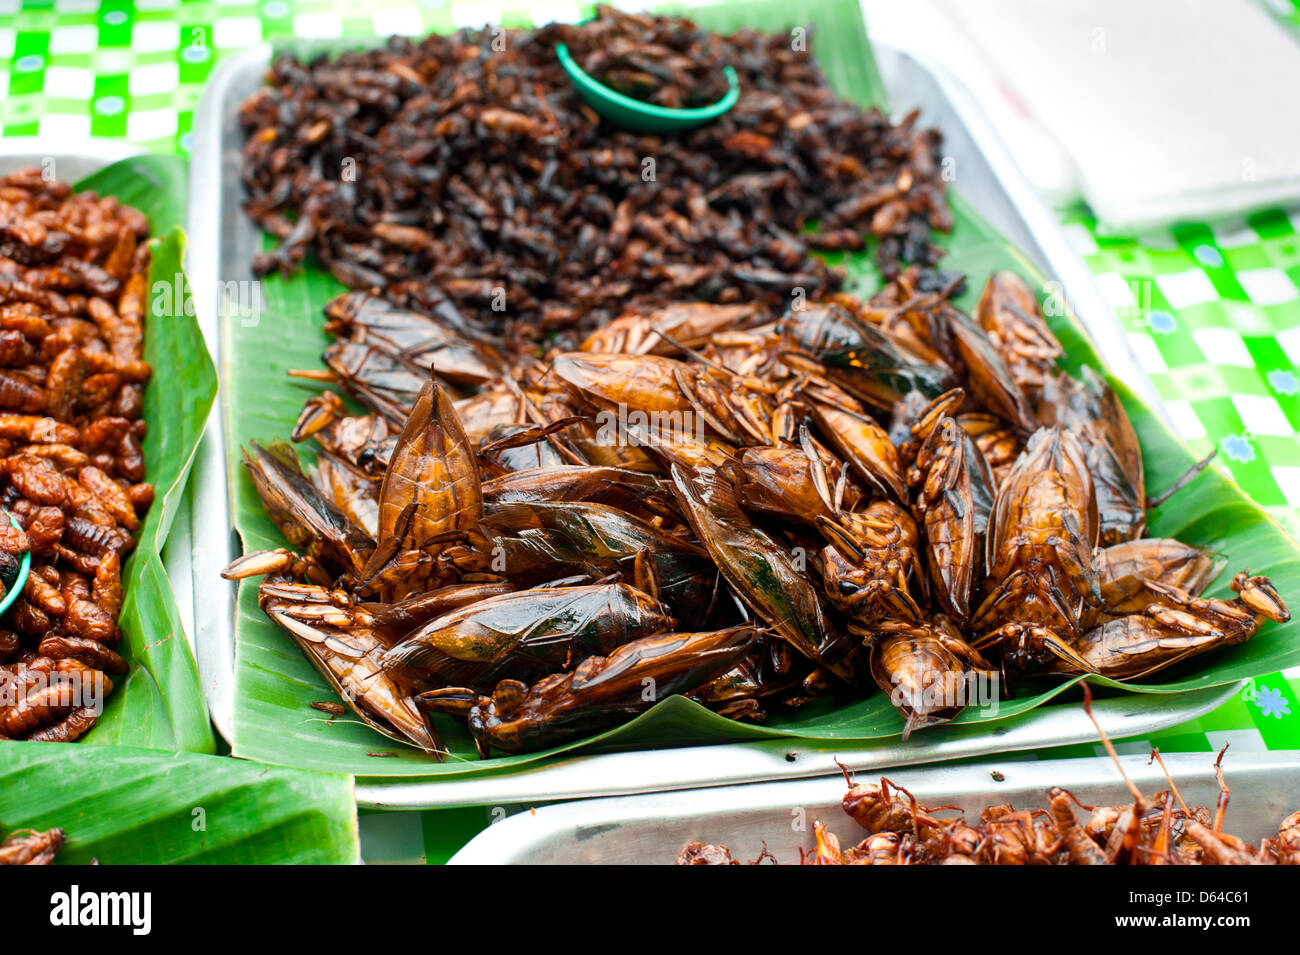 La comida tailandesa en el mercado. Insectos fritos grasshopper para snack Foto de stock